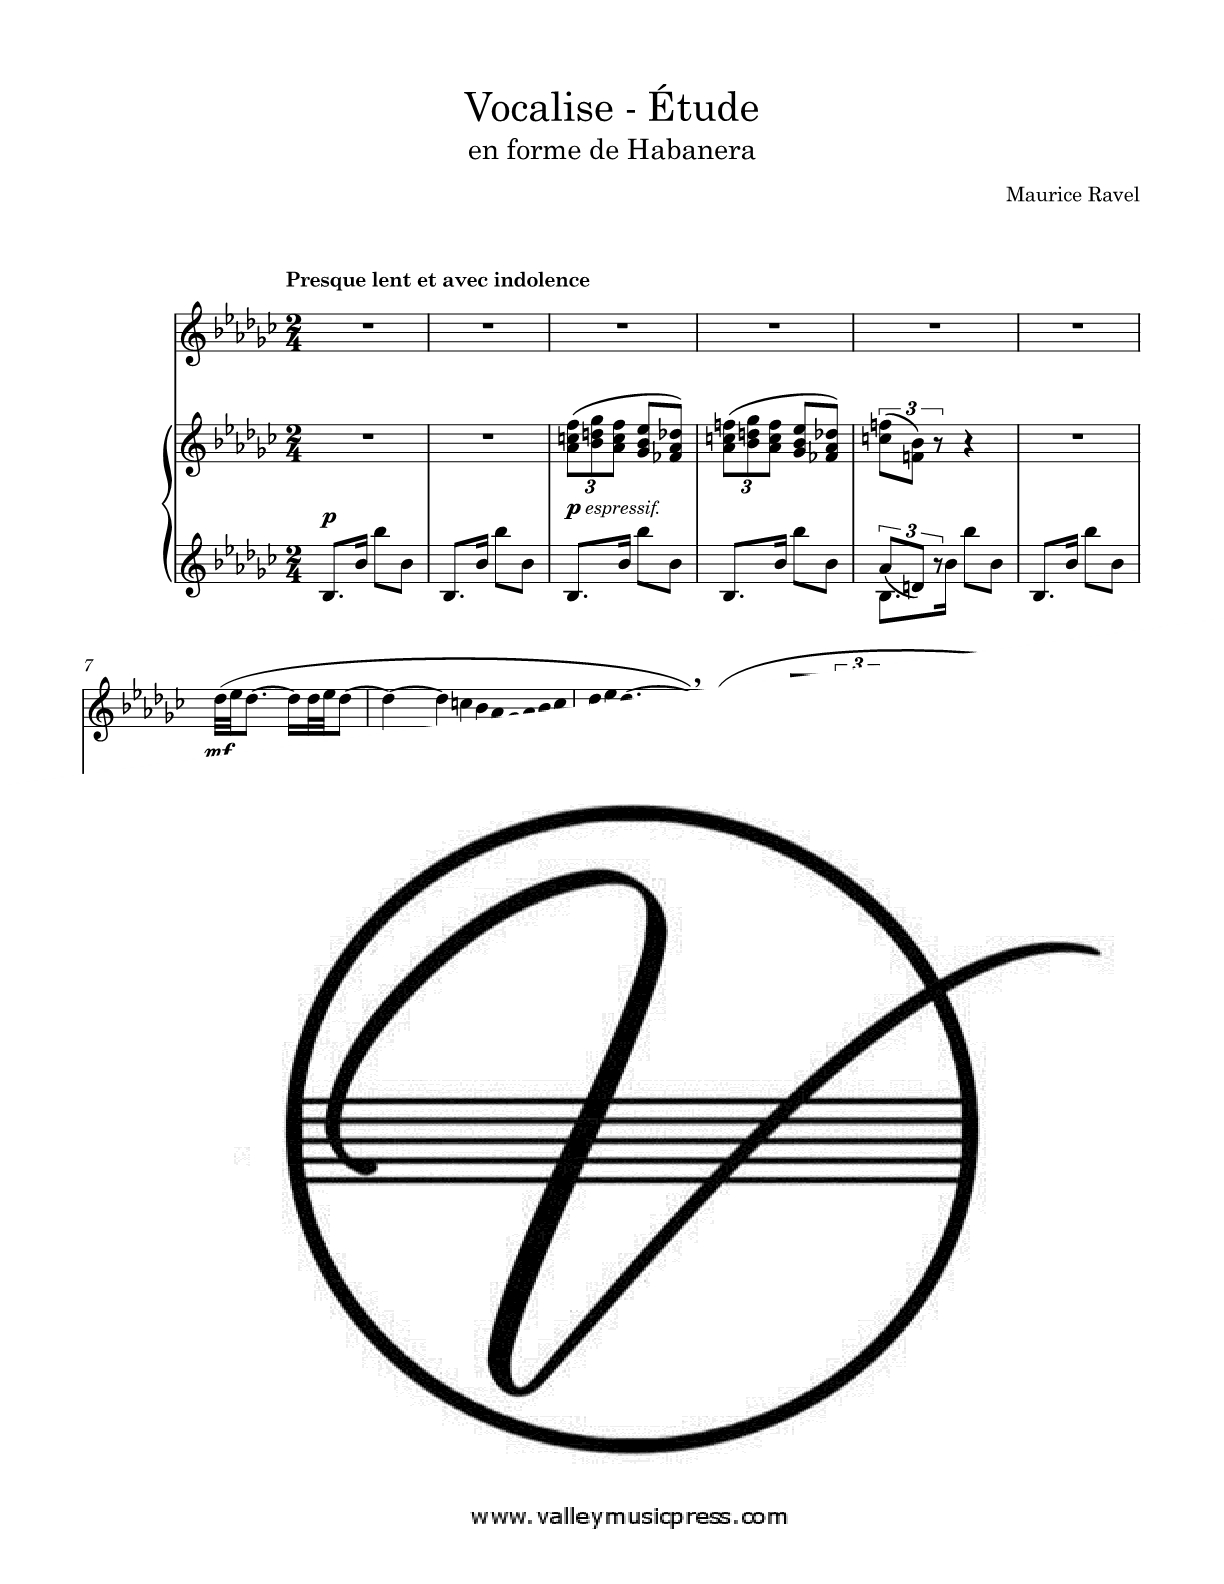 Ravel - Vocalise - Etude en forme de Habanera (Voice) - Click Image to Close